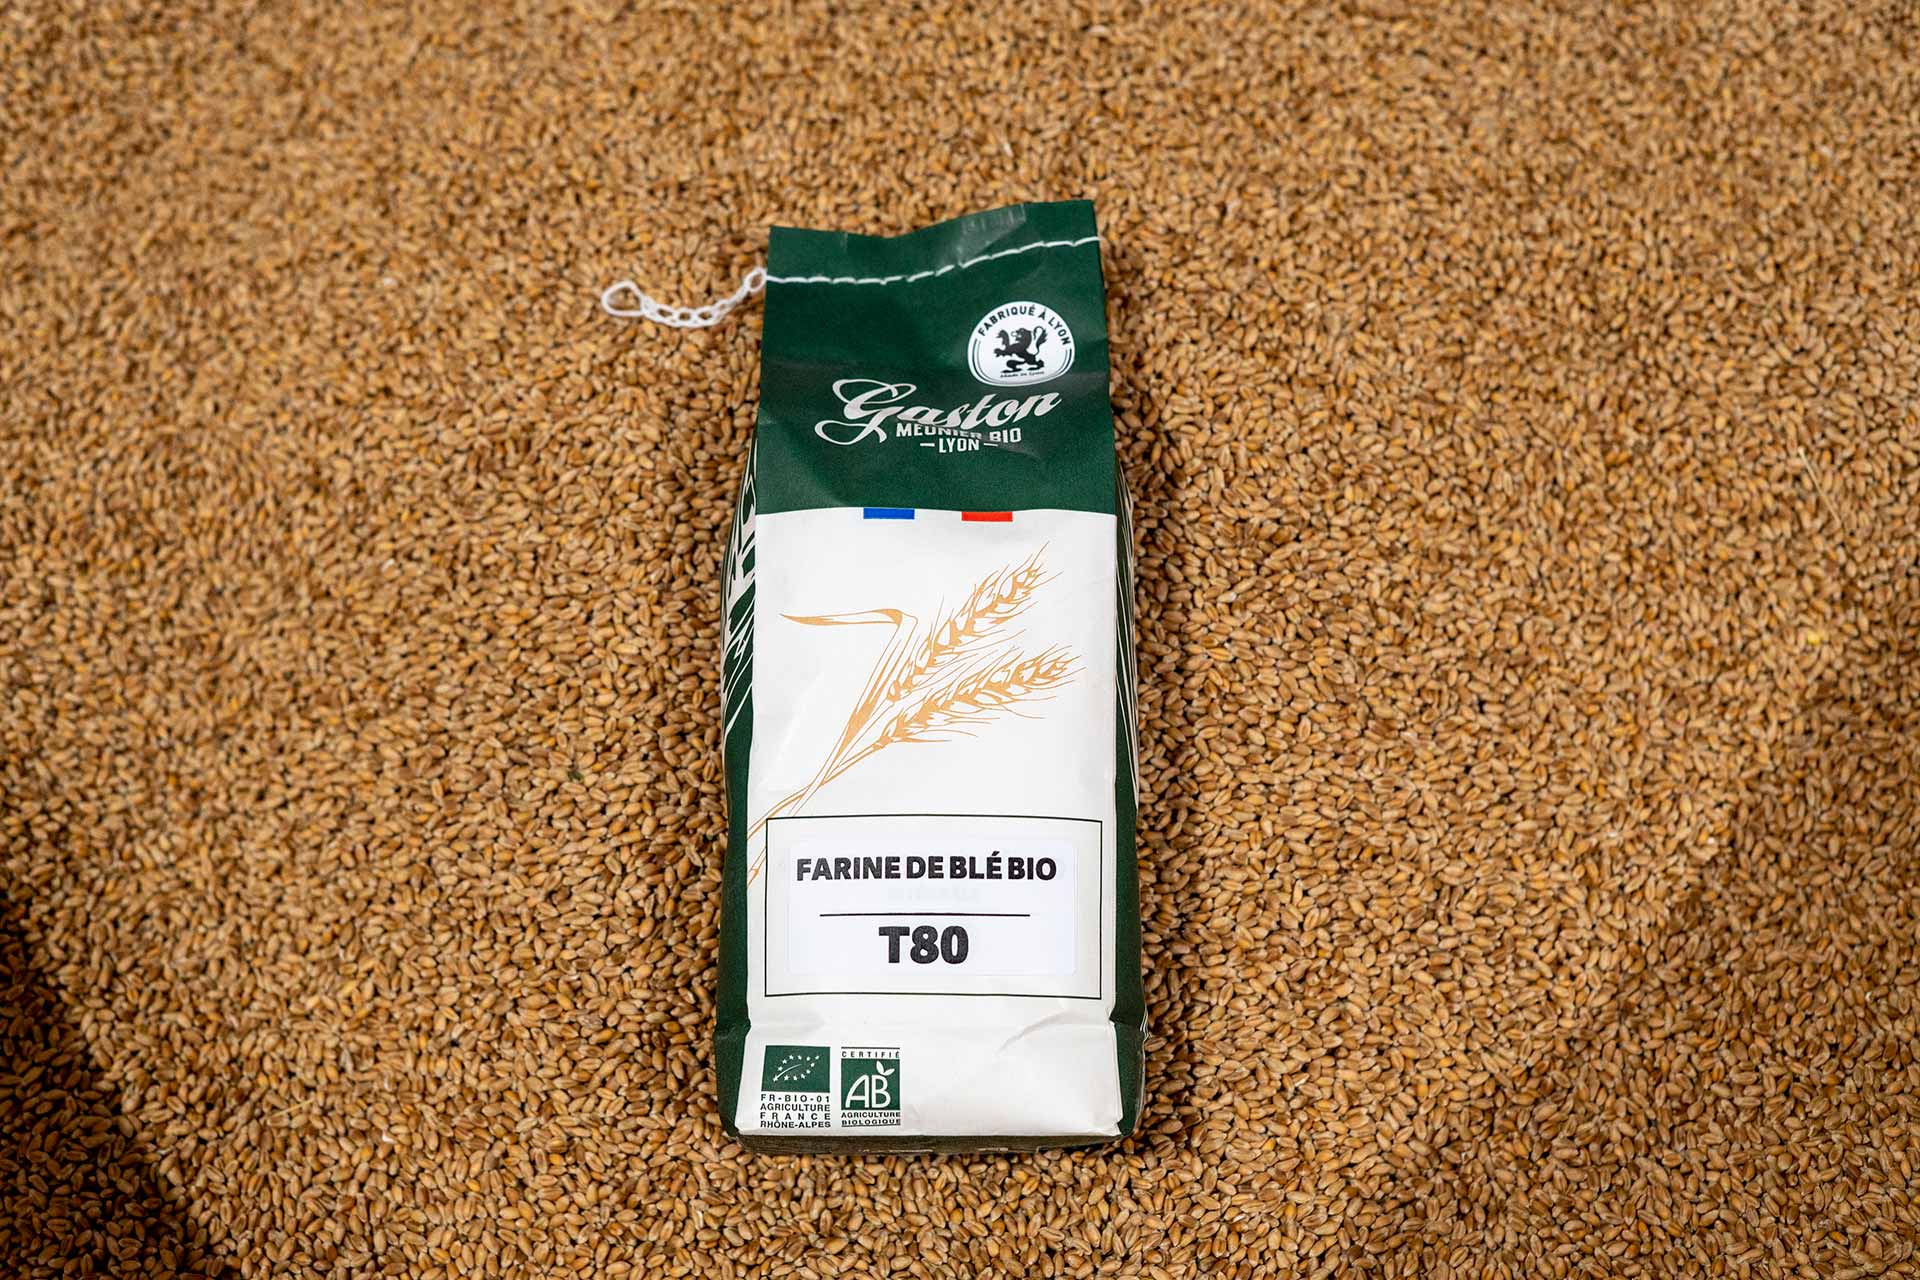 Sachet de farine de blé bio T80 Gaston Meunier Bio – Lyon, déposée sur des grains de blé à la meunerie de Pierre-Bénite (métropole de Lyon)